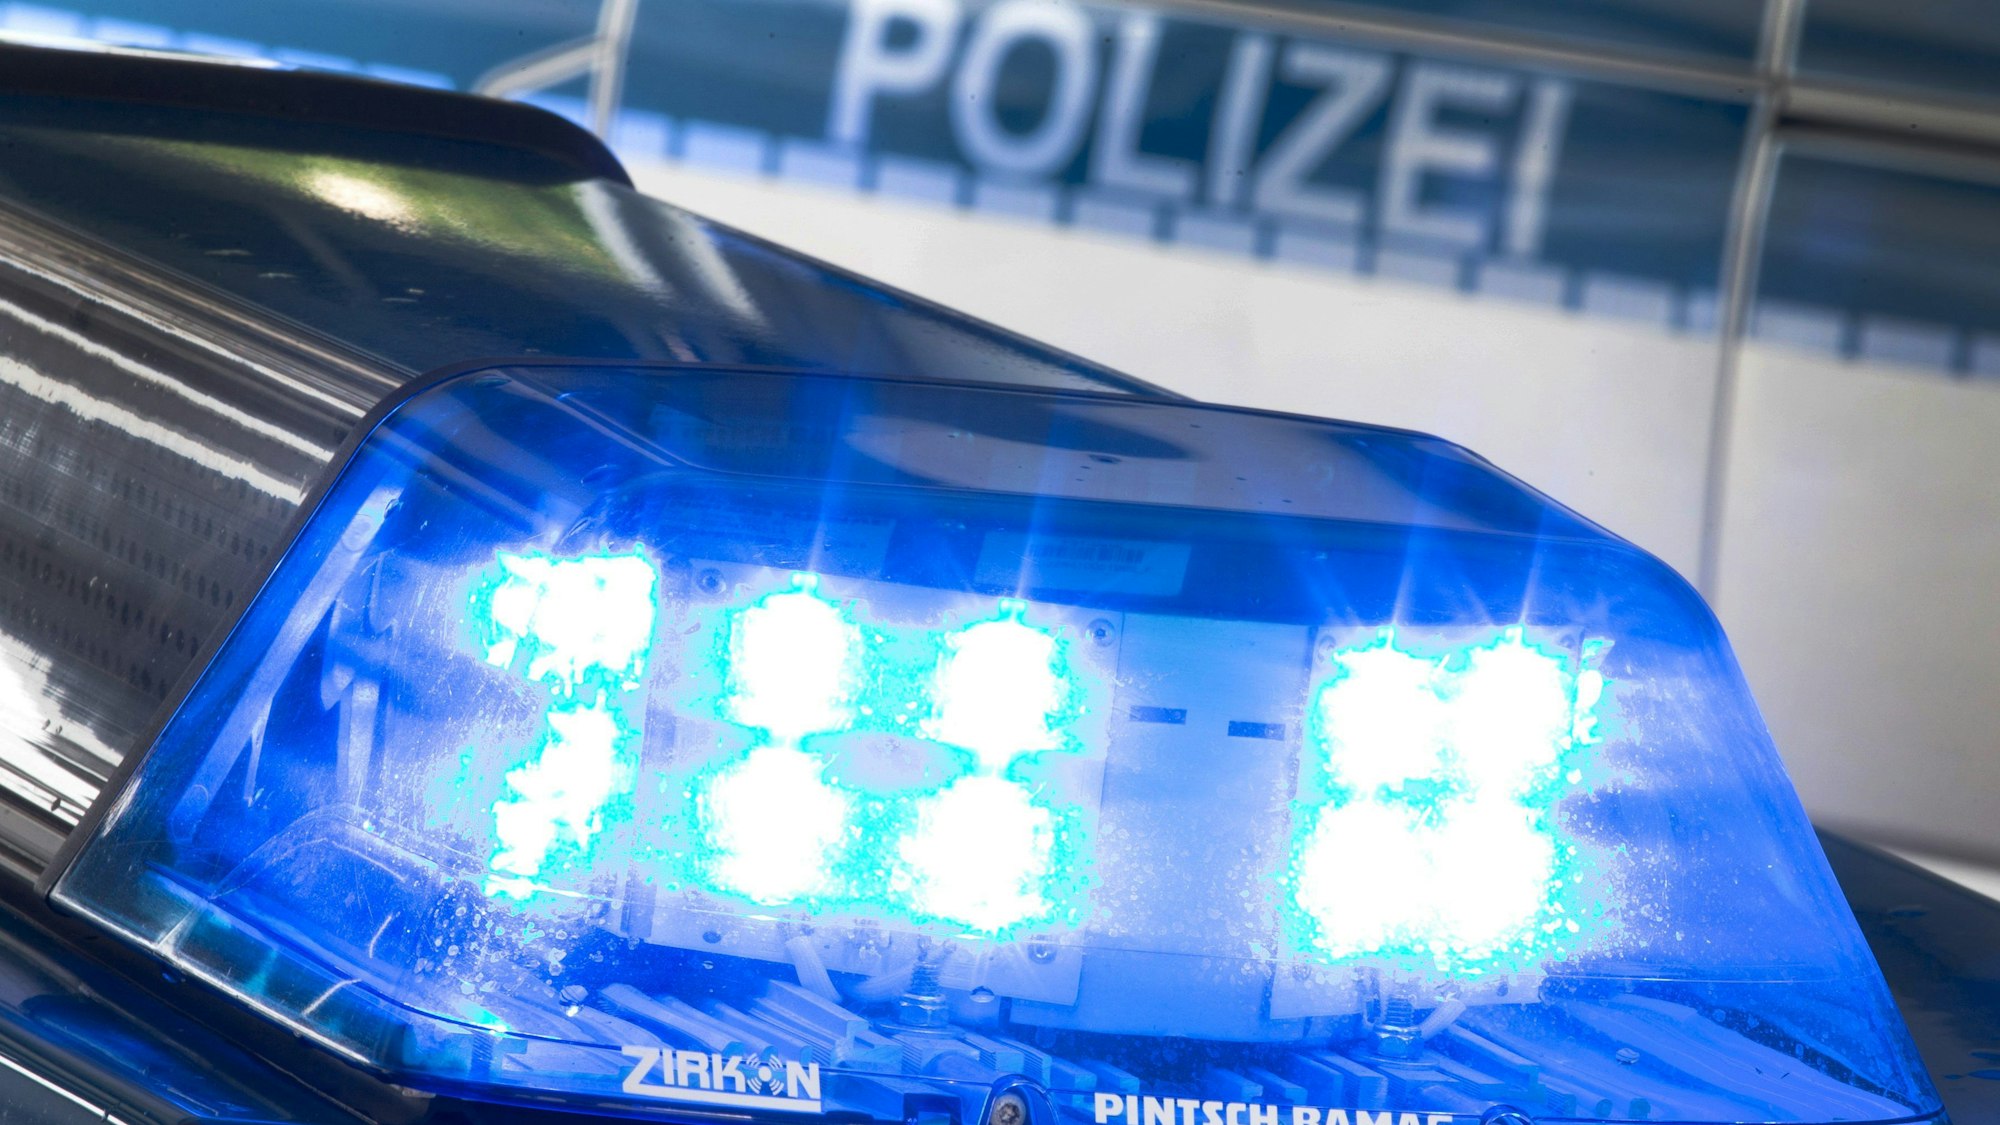 Das Kriminalkommissariat 11 der Polizei Köln hat Ermittlungen wegen versuchten Tötungsdelikts aufgenommen (Symbolbild).